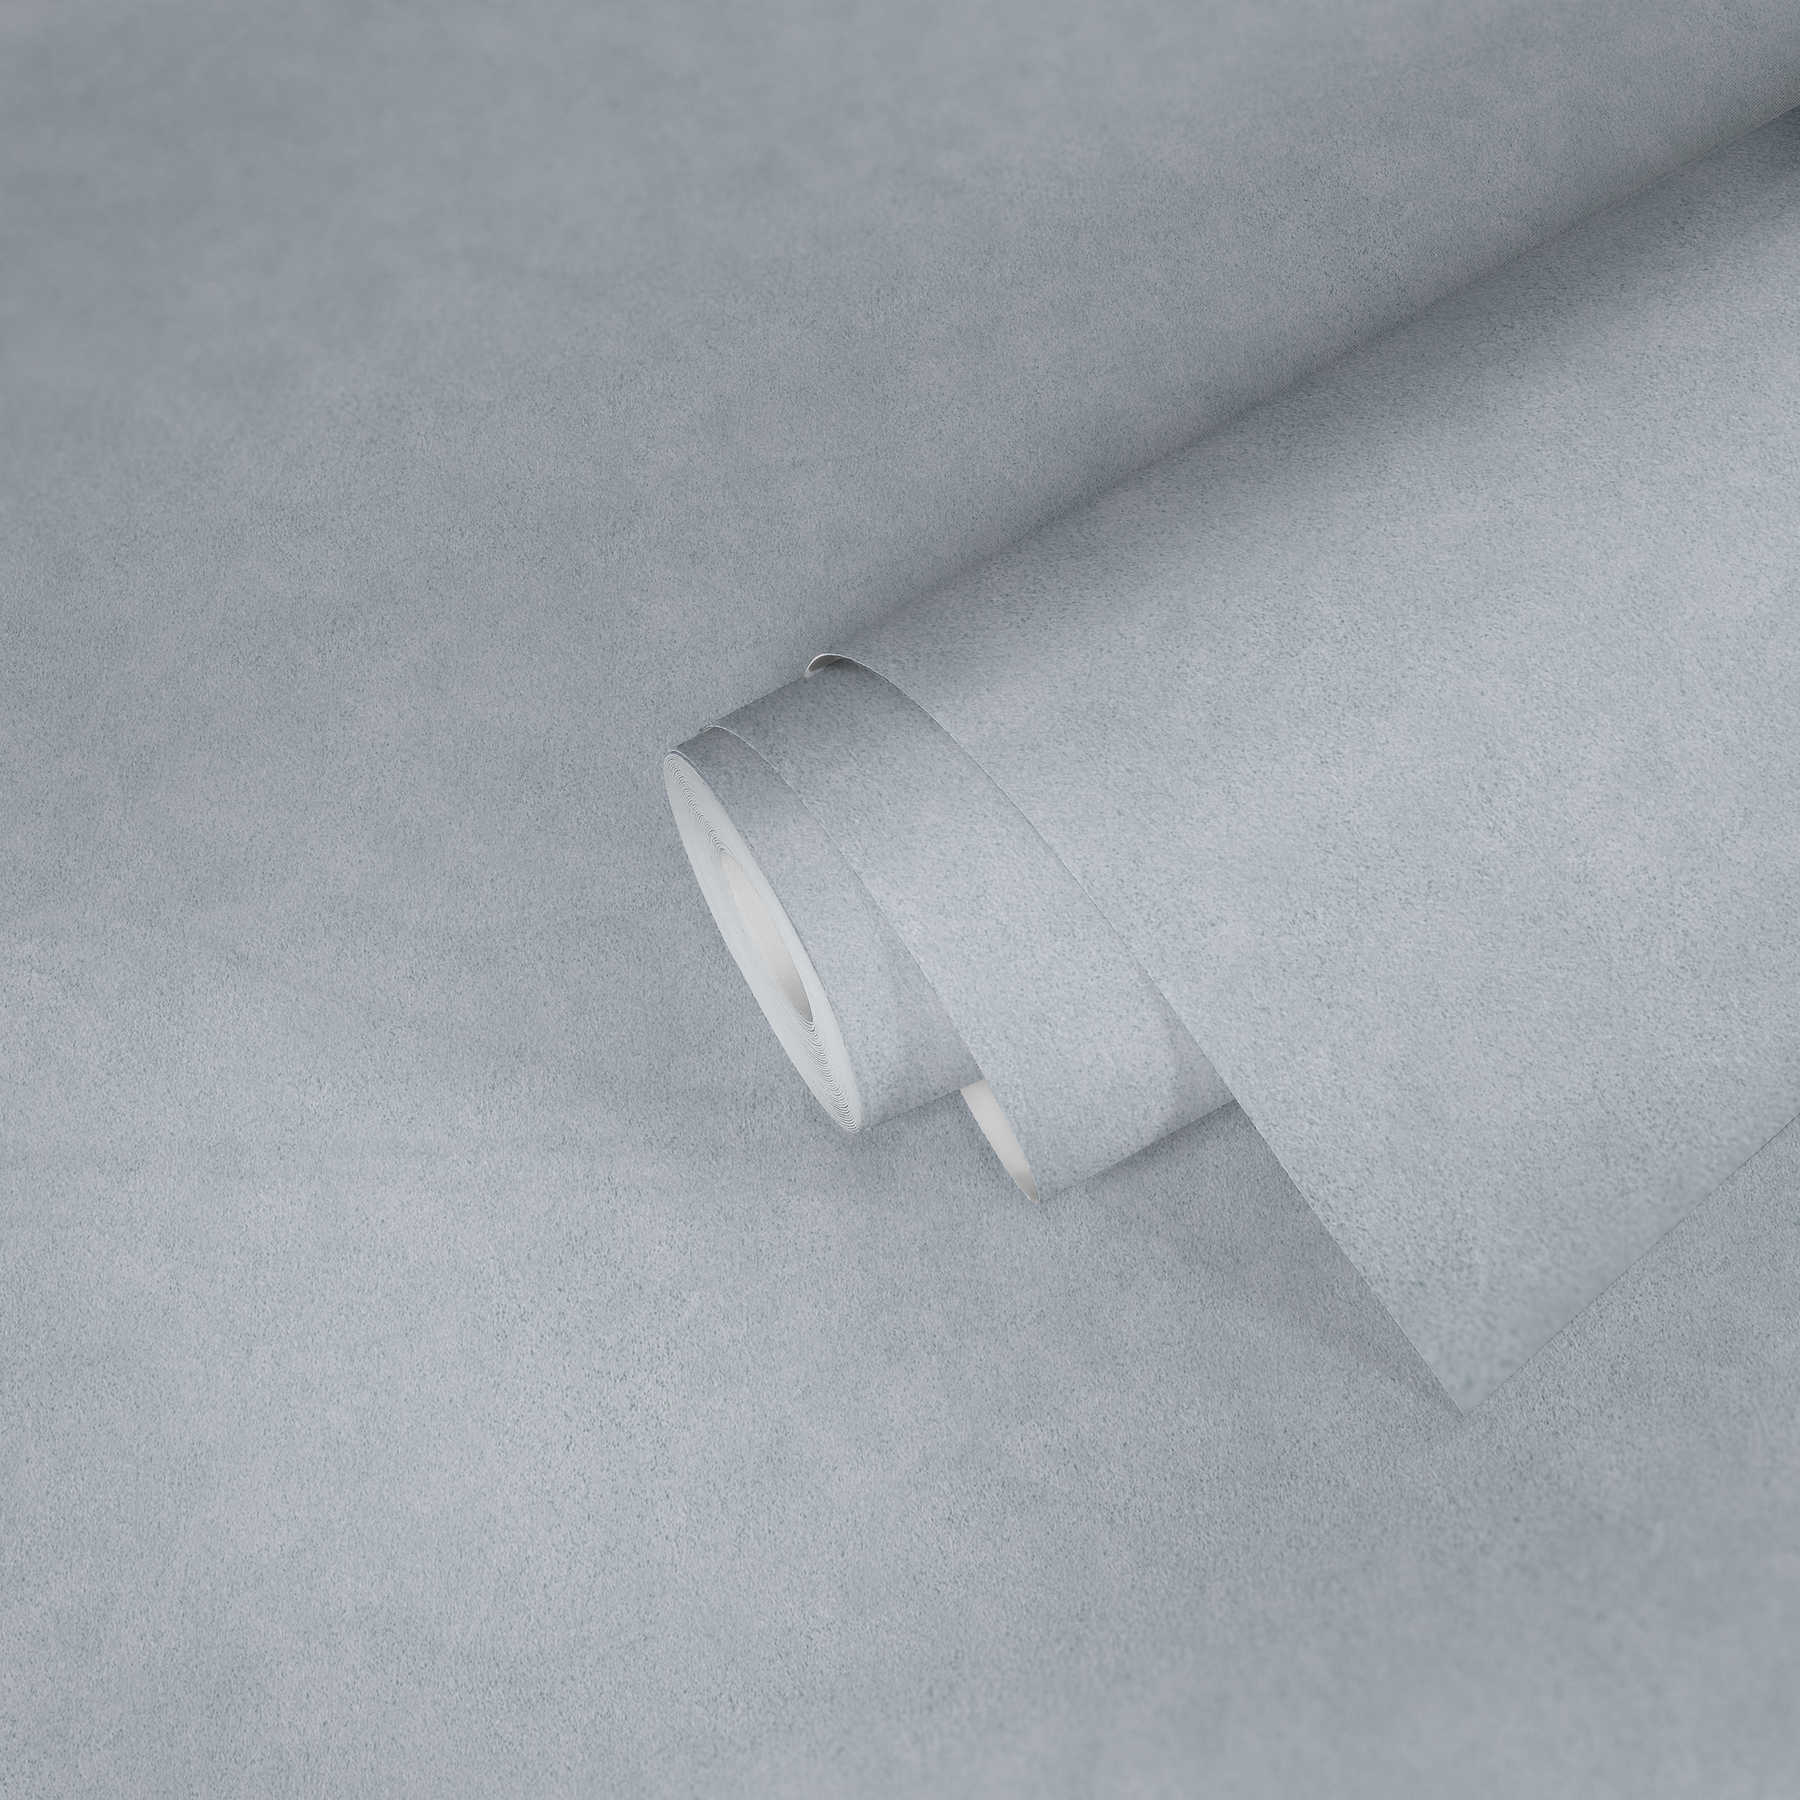             Papier peint gris clair avec design imitation plâtre & couleur chinée
        